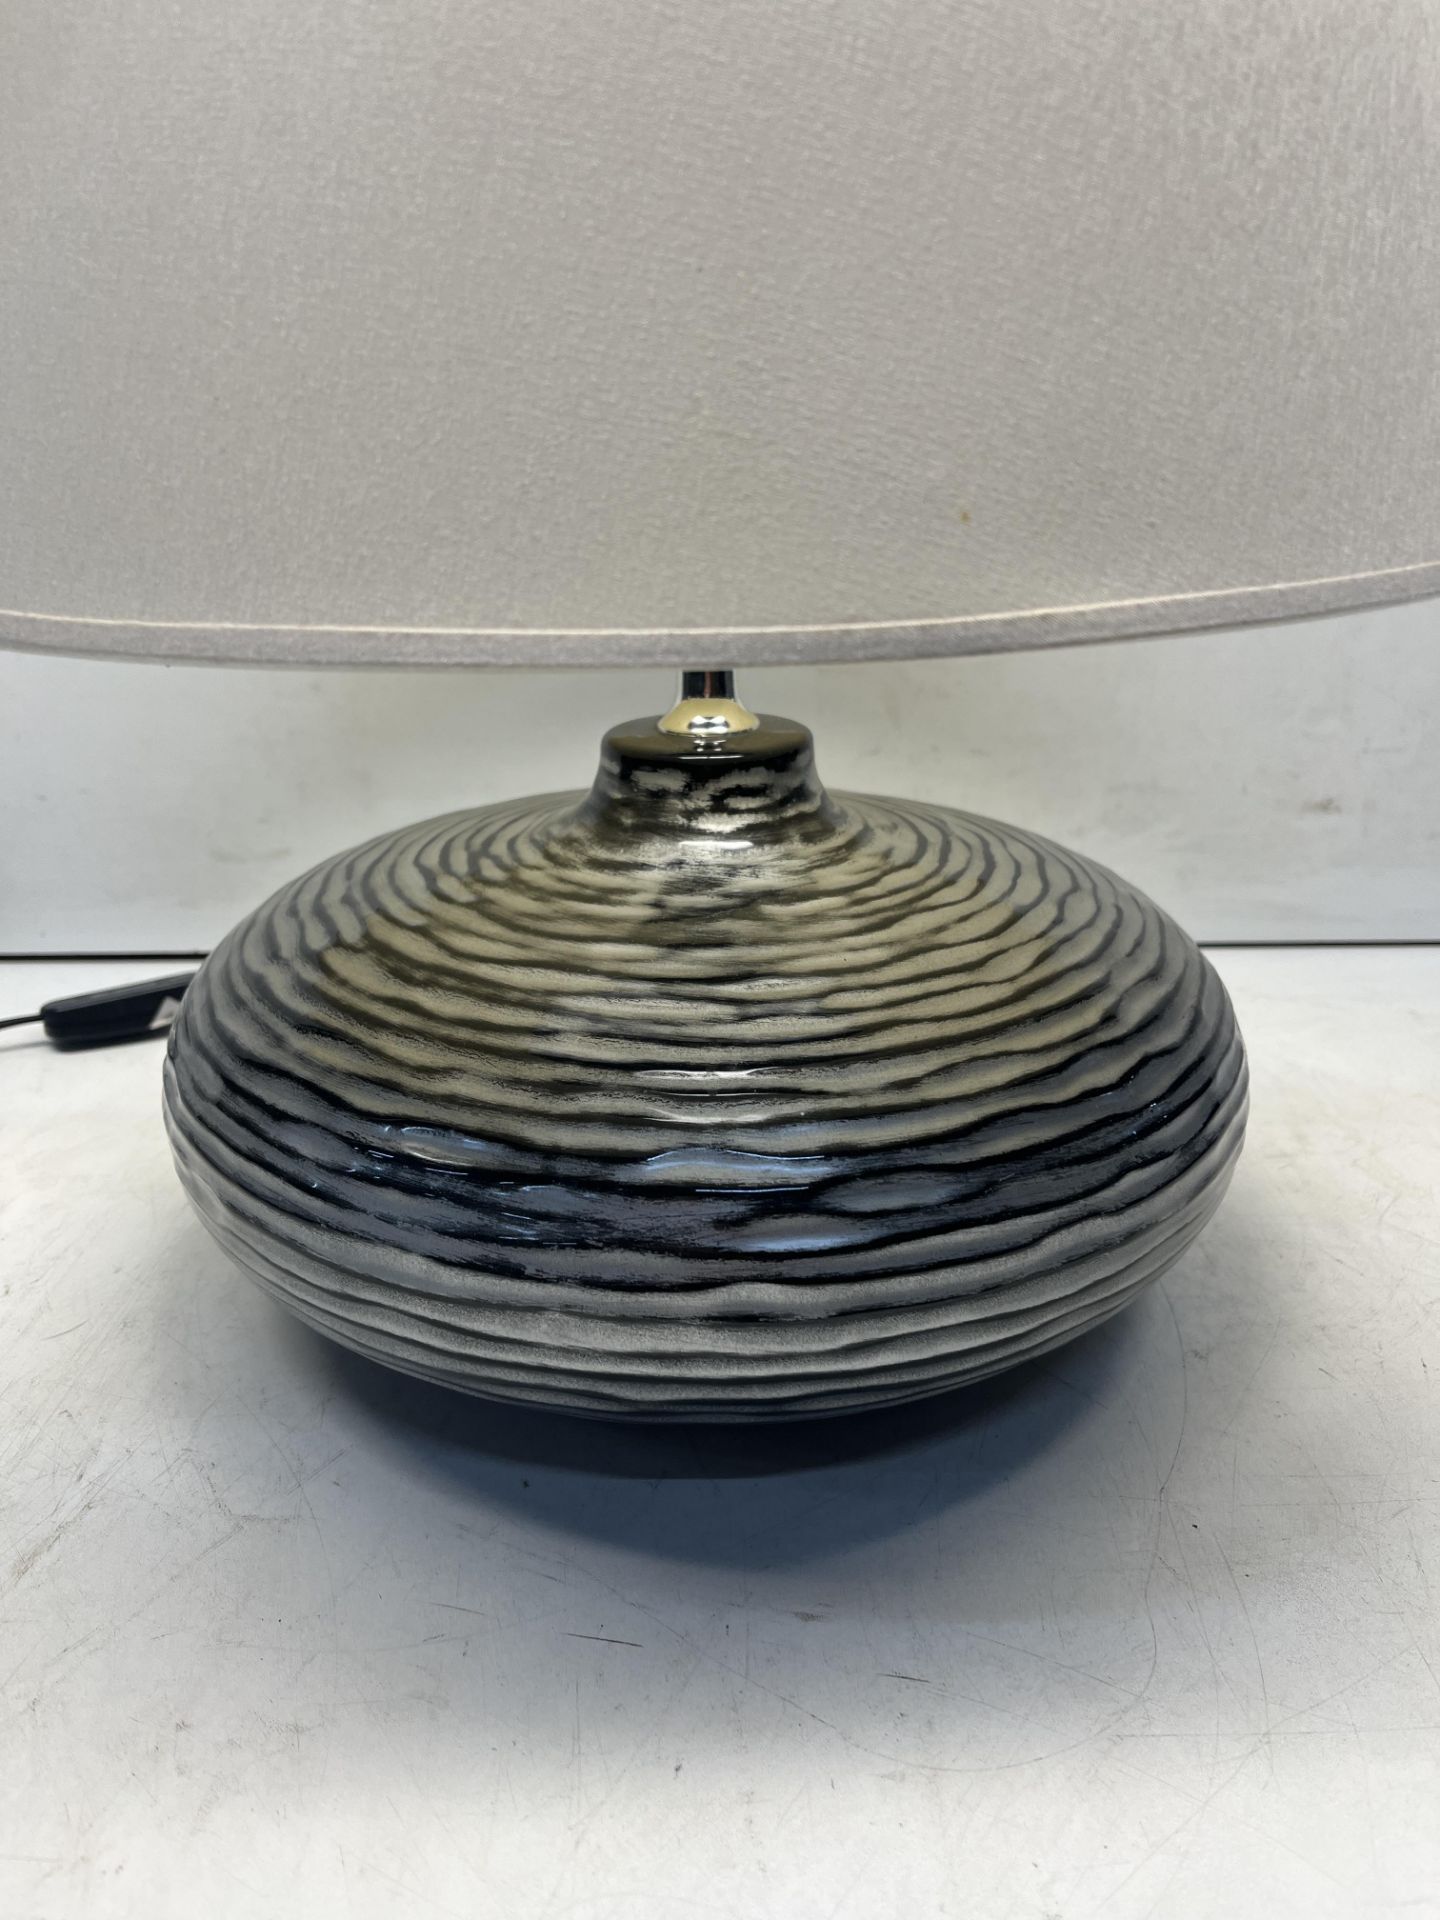 Circular Ceramic Table Lamp - Image 2 of 4